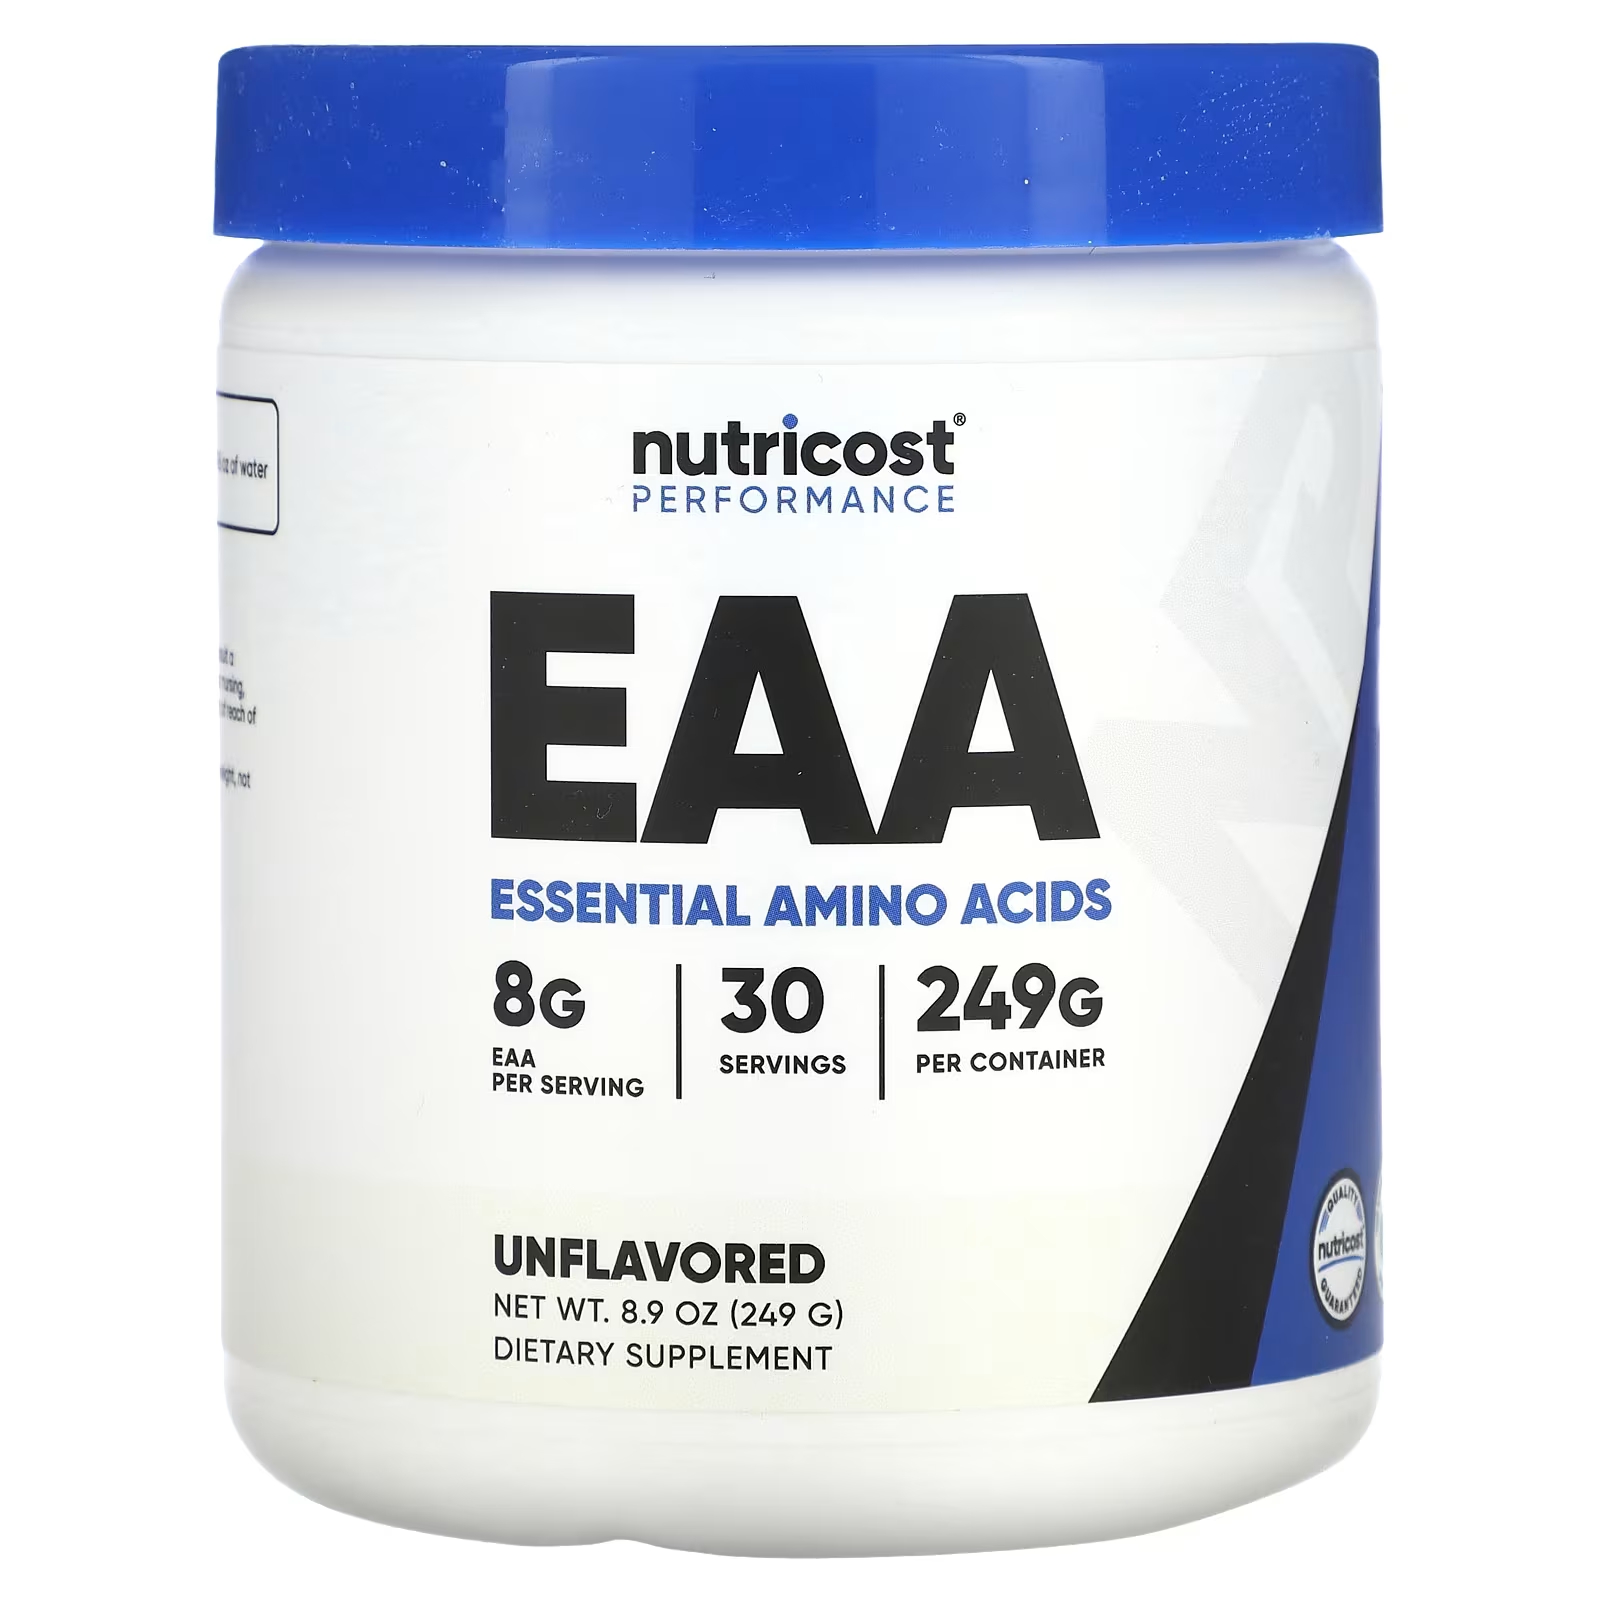 Пищевая добавка Nutricost Performance EAA, 249 г пищевая добавка nutricost performance eaa 249 г